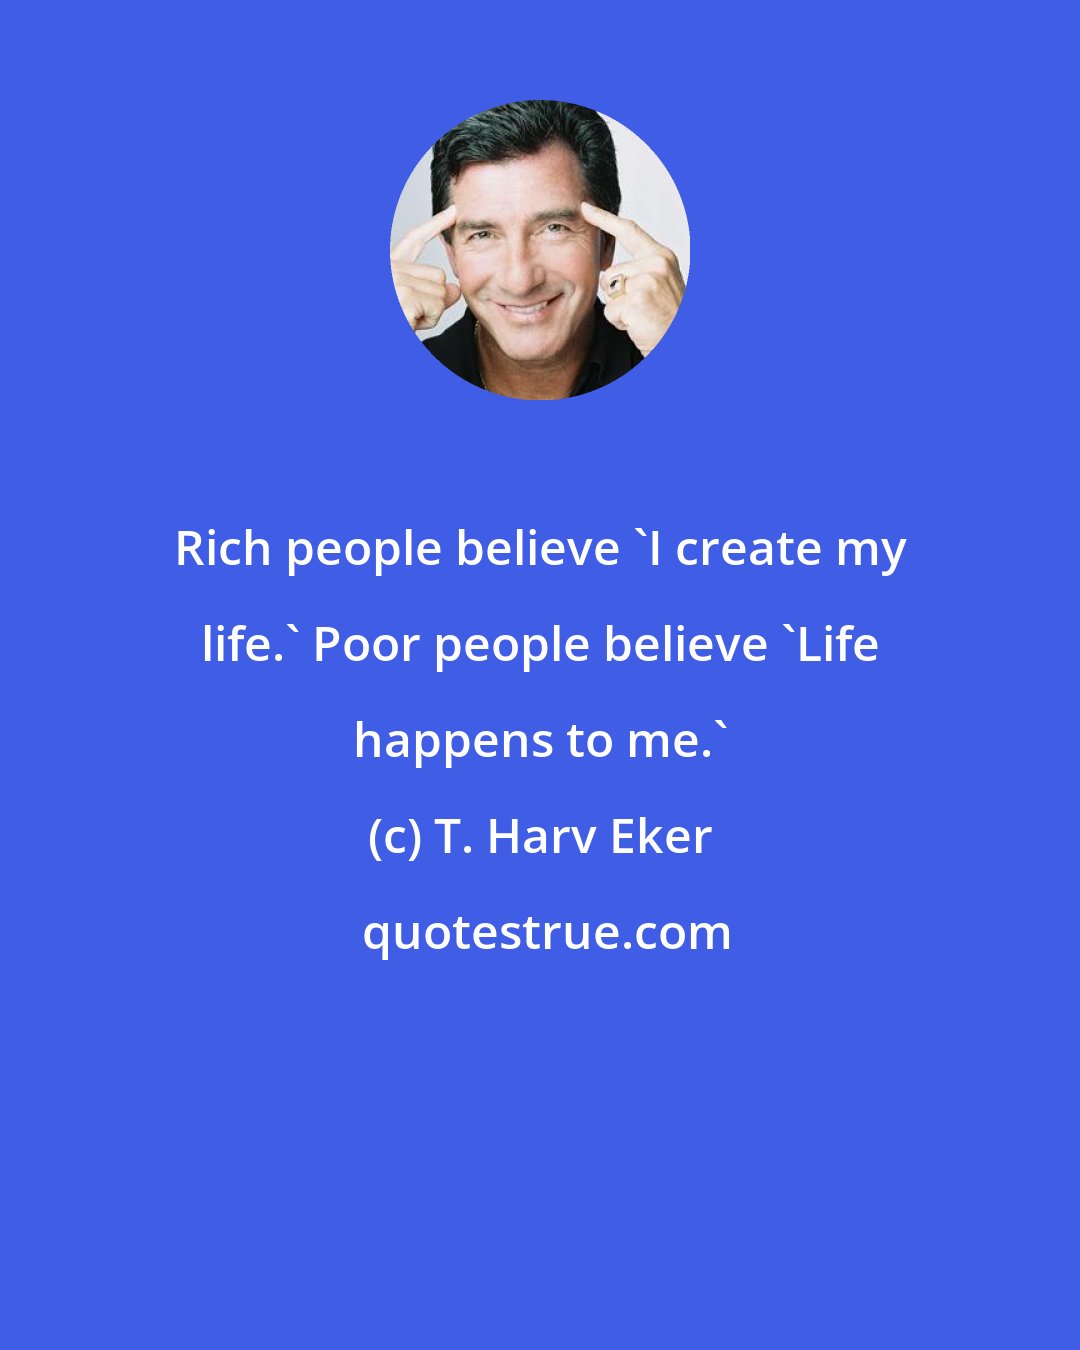 T. Harv Eker: Rich people believe 'I create my life.' Poor people believe 'Life happens to me.'